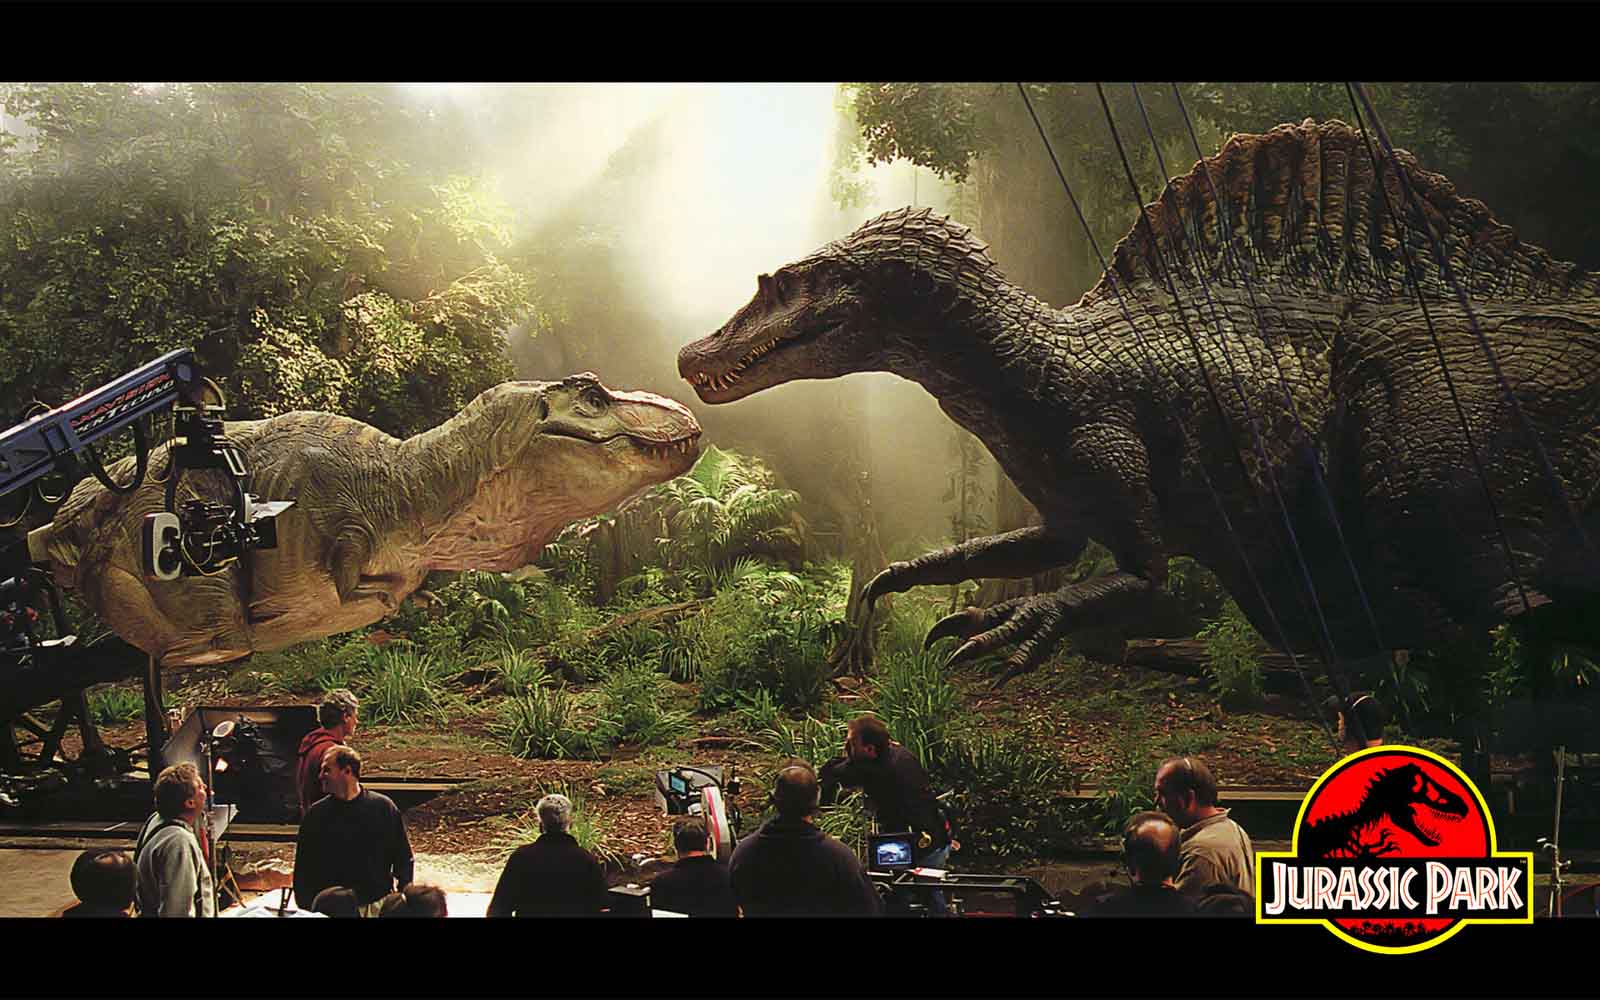 Jurassic Park 4 Wallpaper